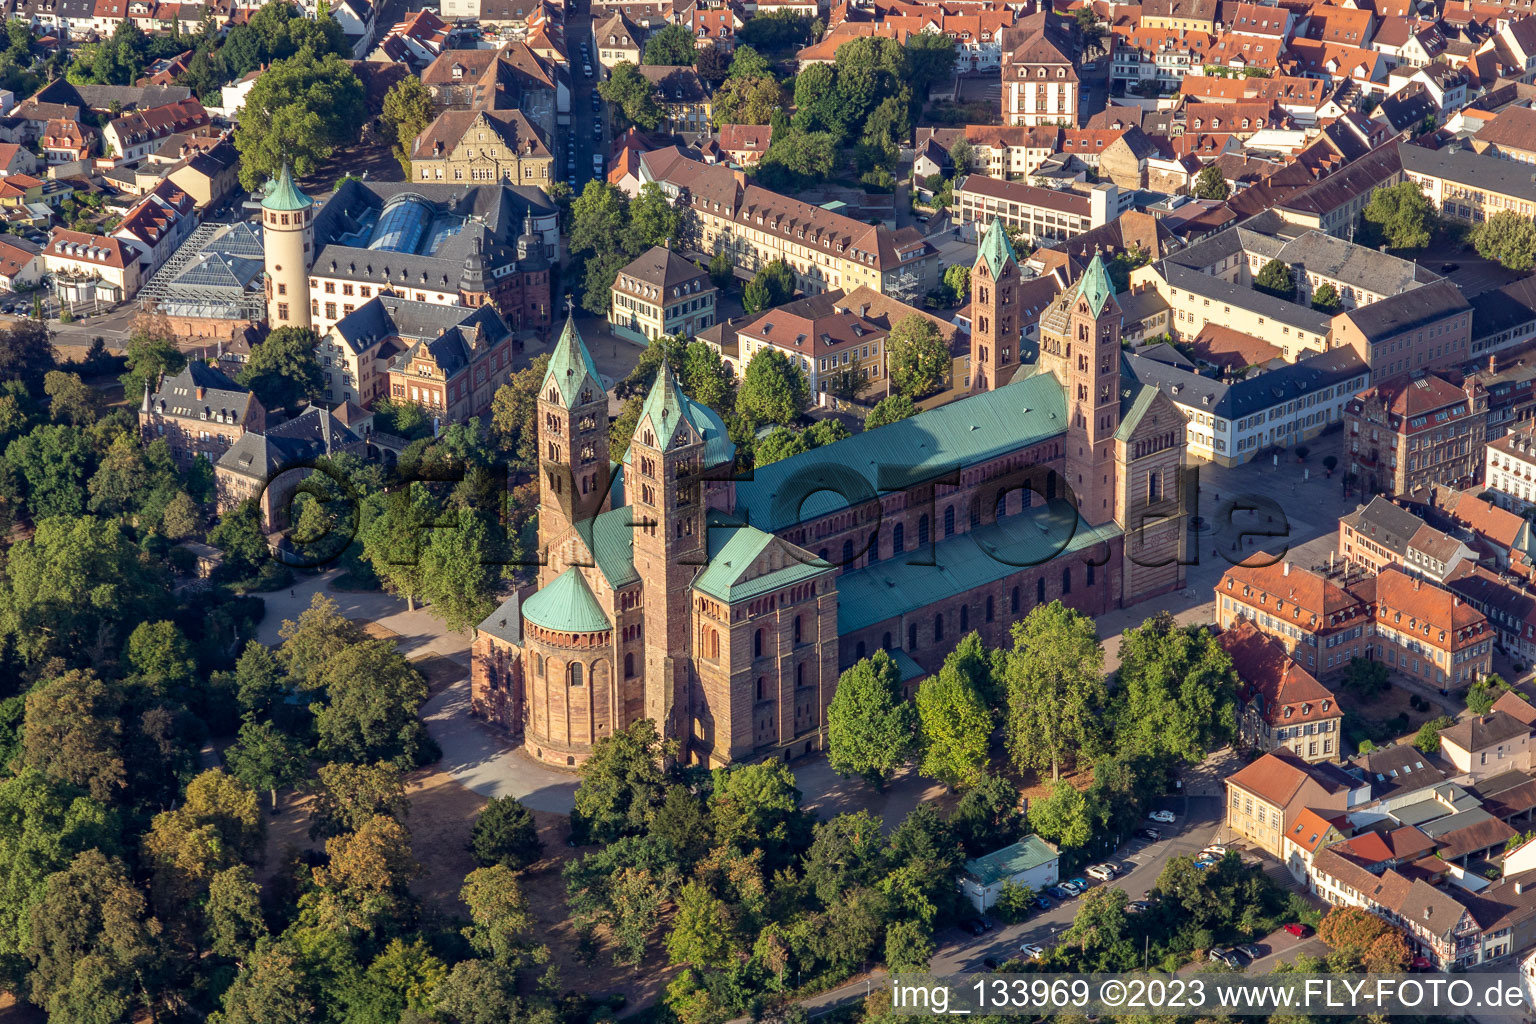 Dom zu Speyer im Bundesland Rheinland-Pfalz, Deutschland aus der Luft